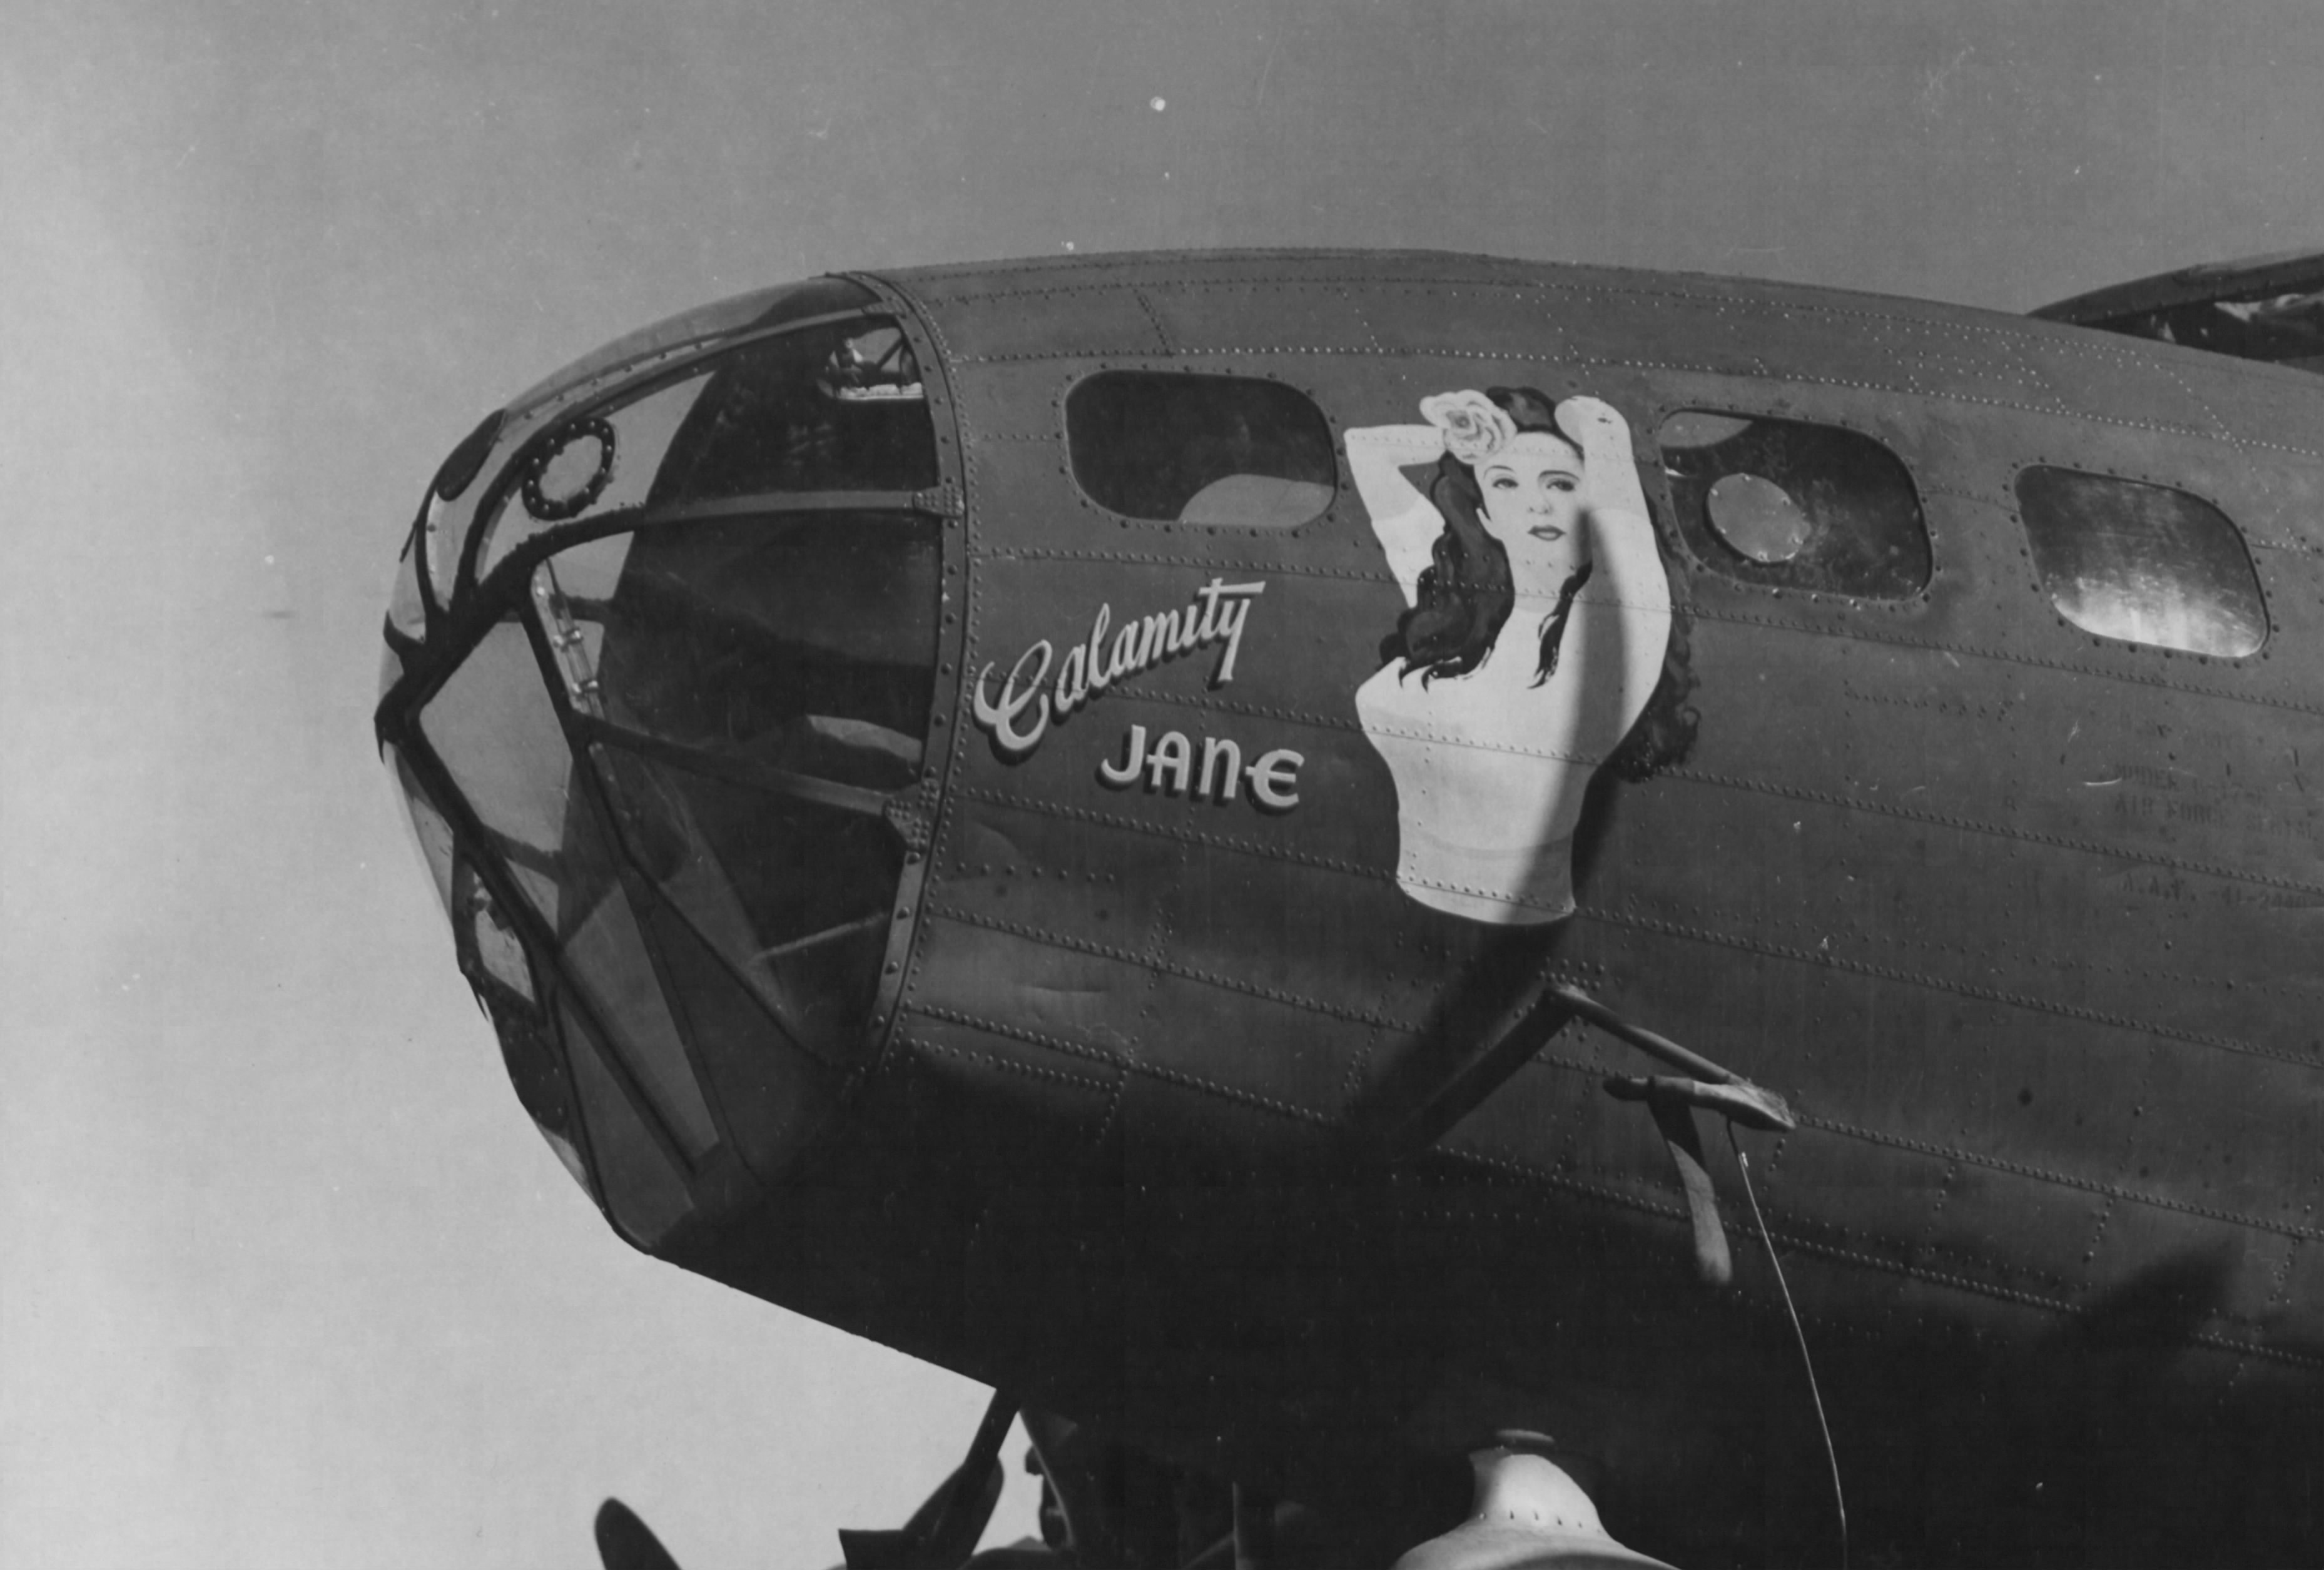 B-17 #41-2440 / Calamity Jane